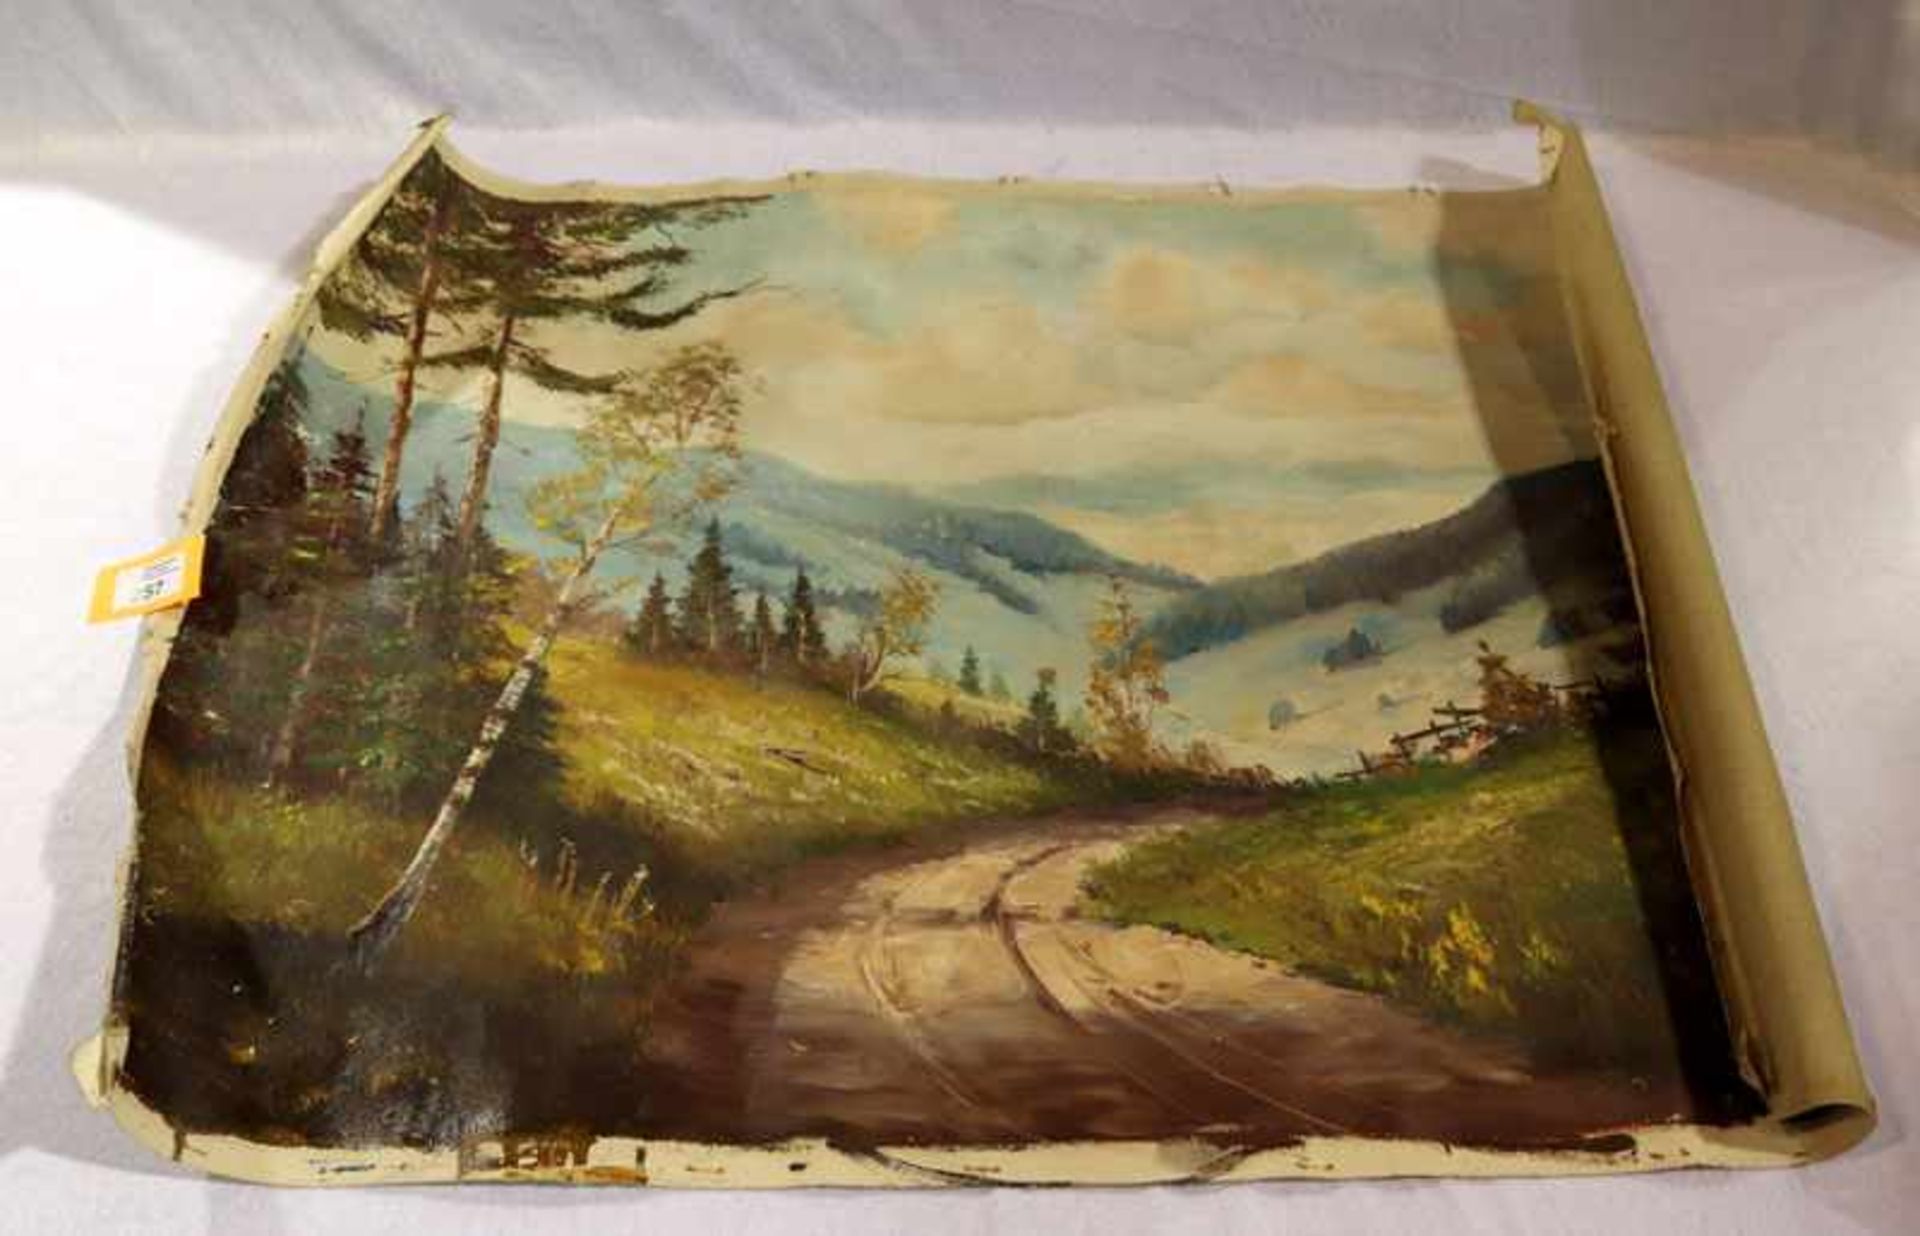 Gemälde ÖL/LW 'Landschafts-Szenerie', signiert J. Muhr, beschädigt, ohne Rahmen 58 cm x 78 cm